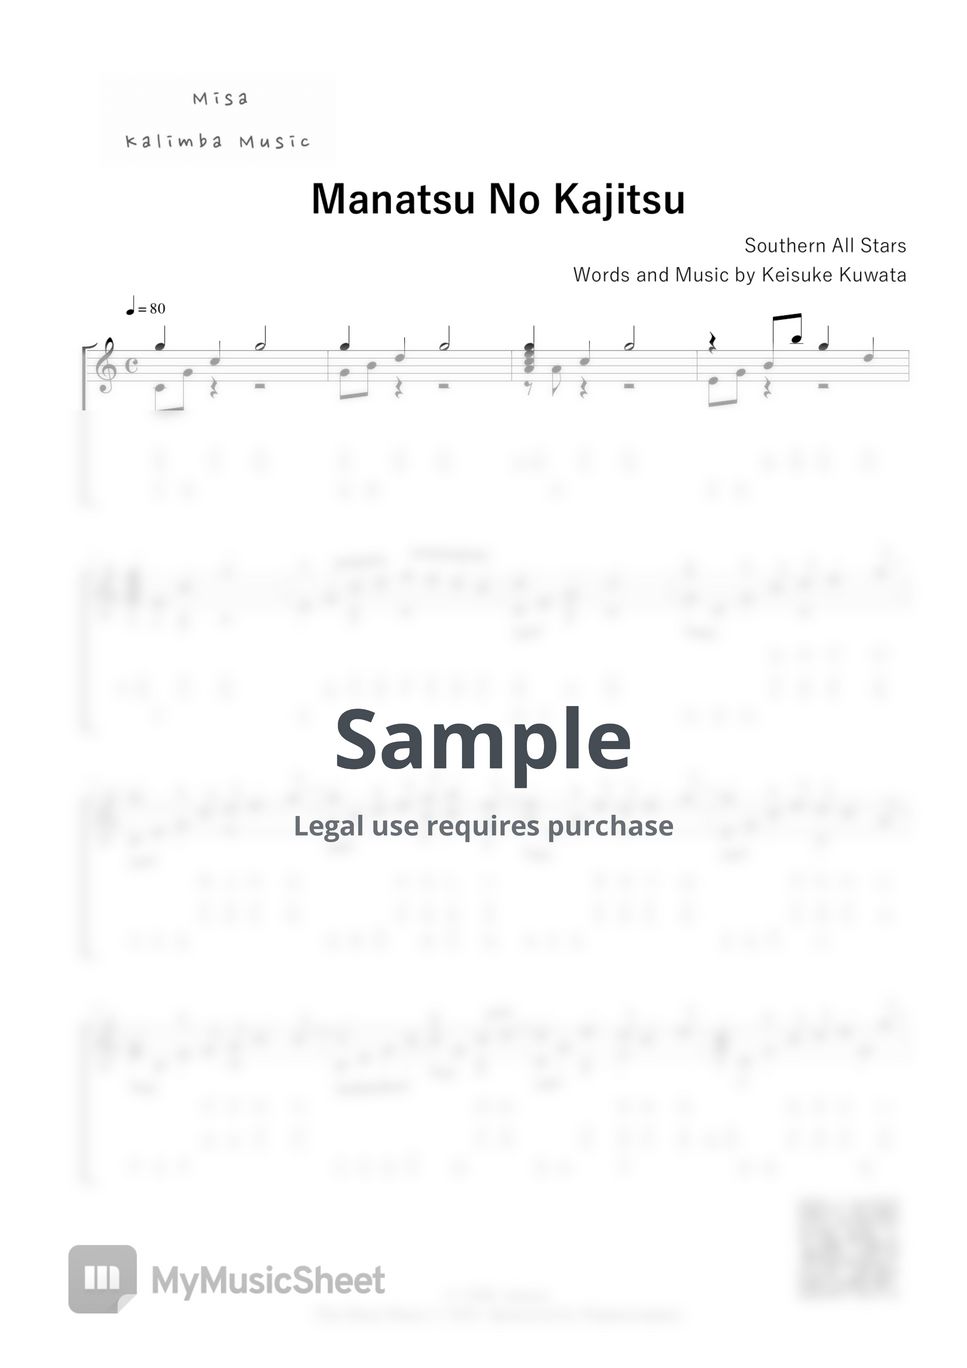 Southern All Stars - Manatsu No Kajitsu / 17 keys kalimba / Letter Notation by Misa / Kalimba Music